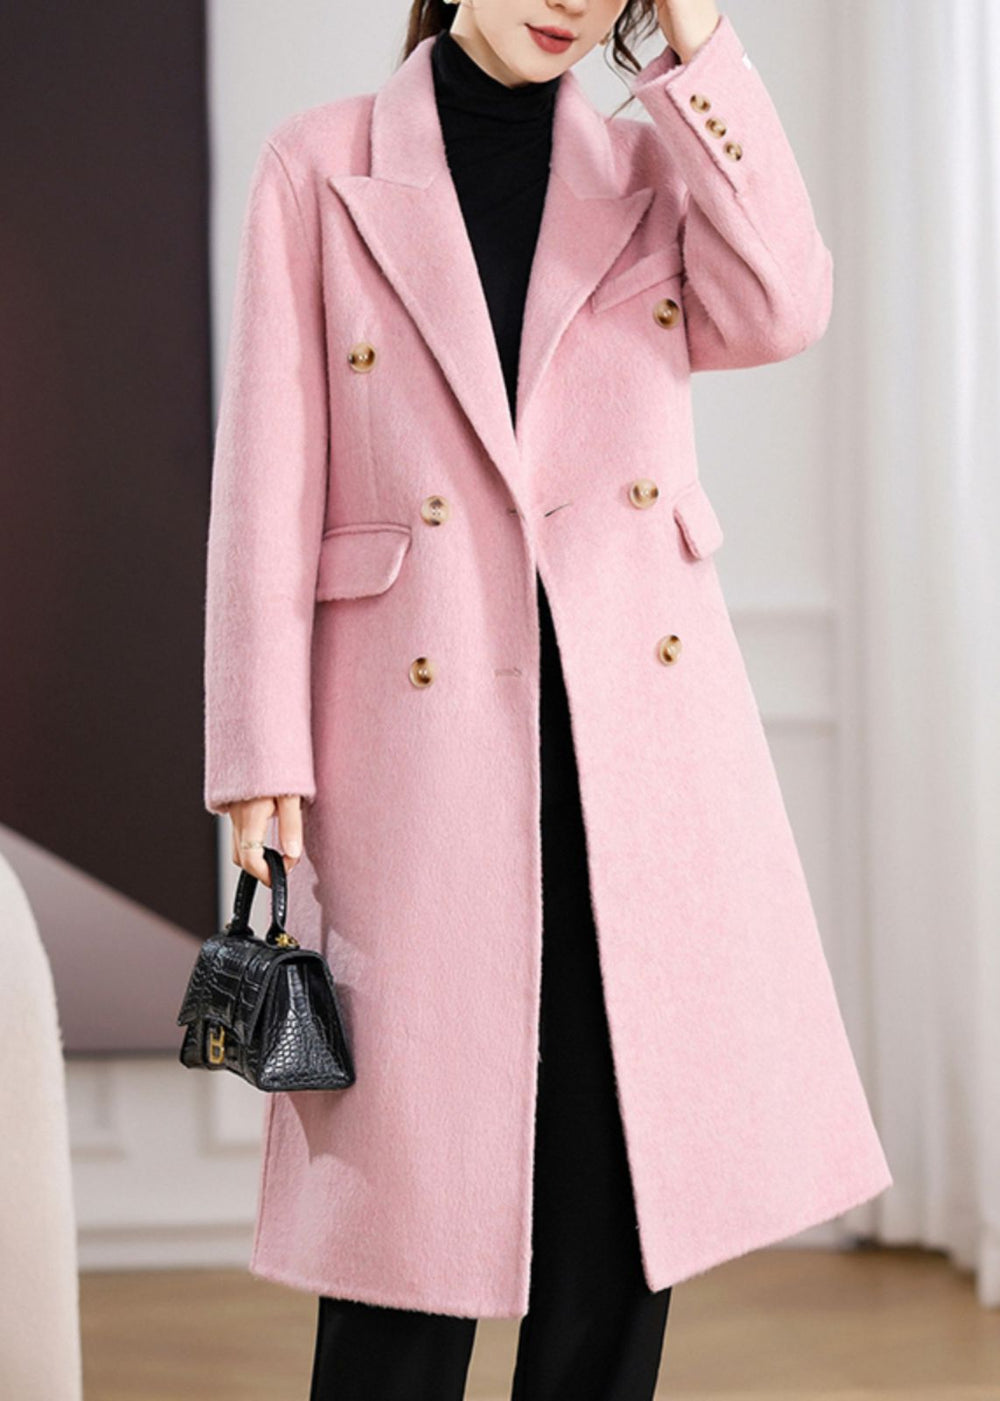 Coats & Jackets | Vivian Seven